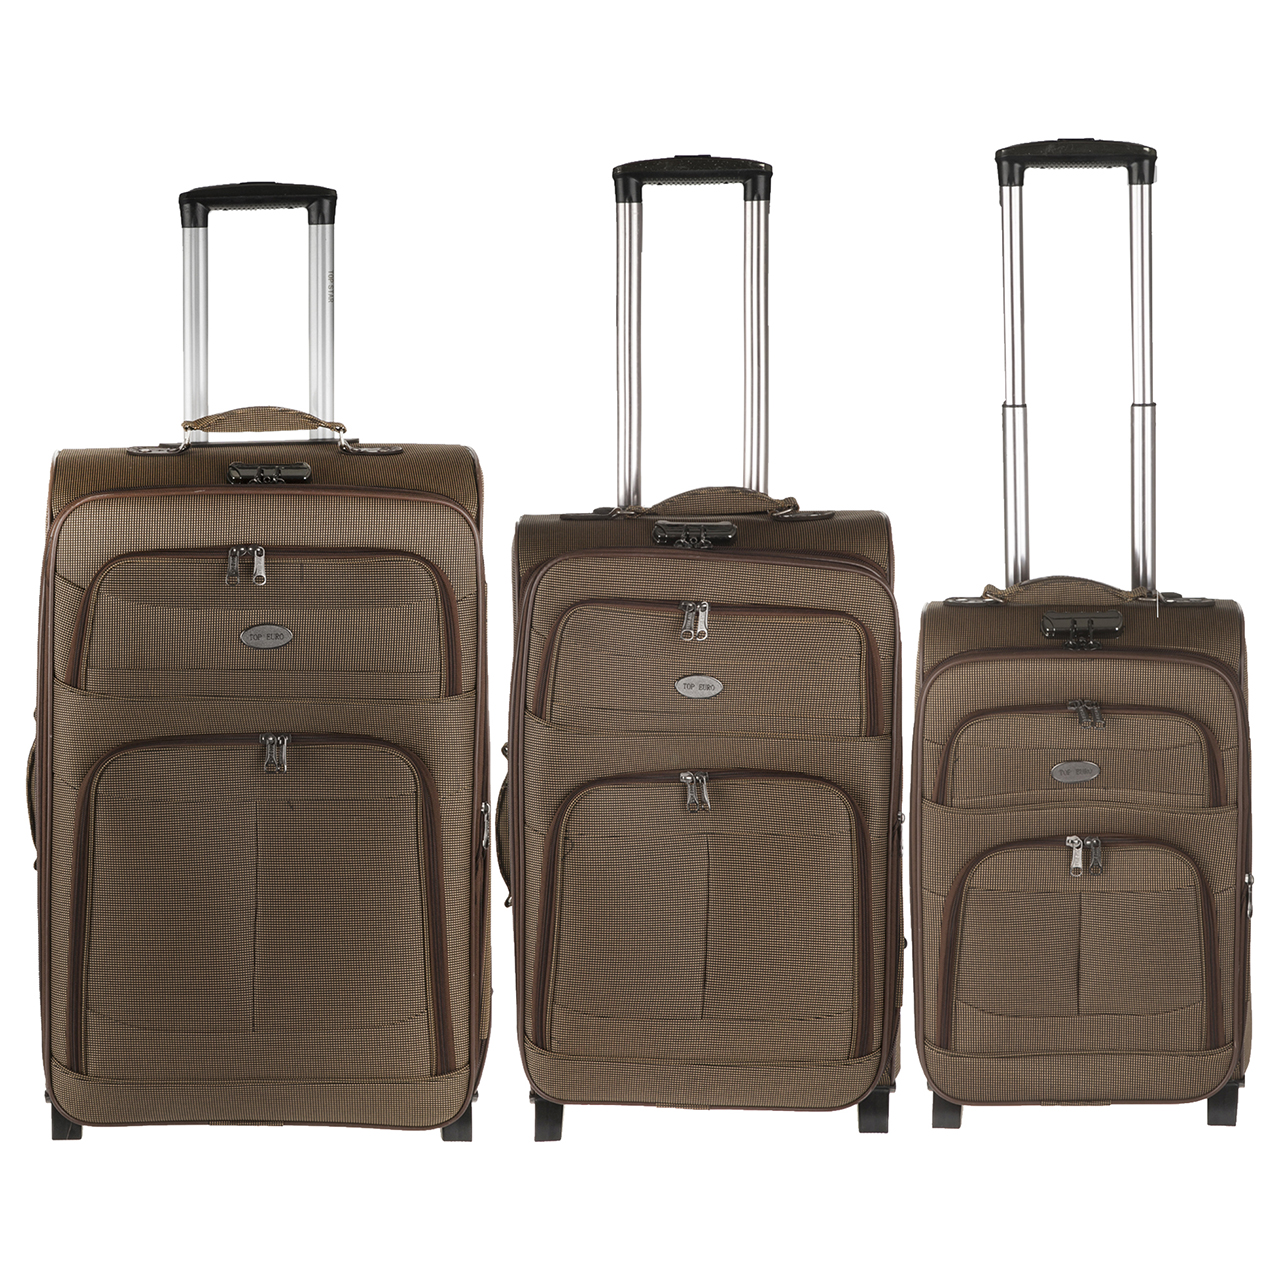 مجموعه سه عددی چمدان تاپ یورو مدل 01